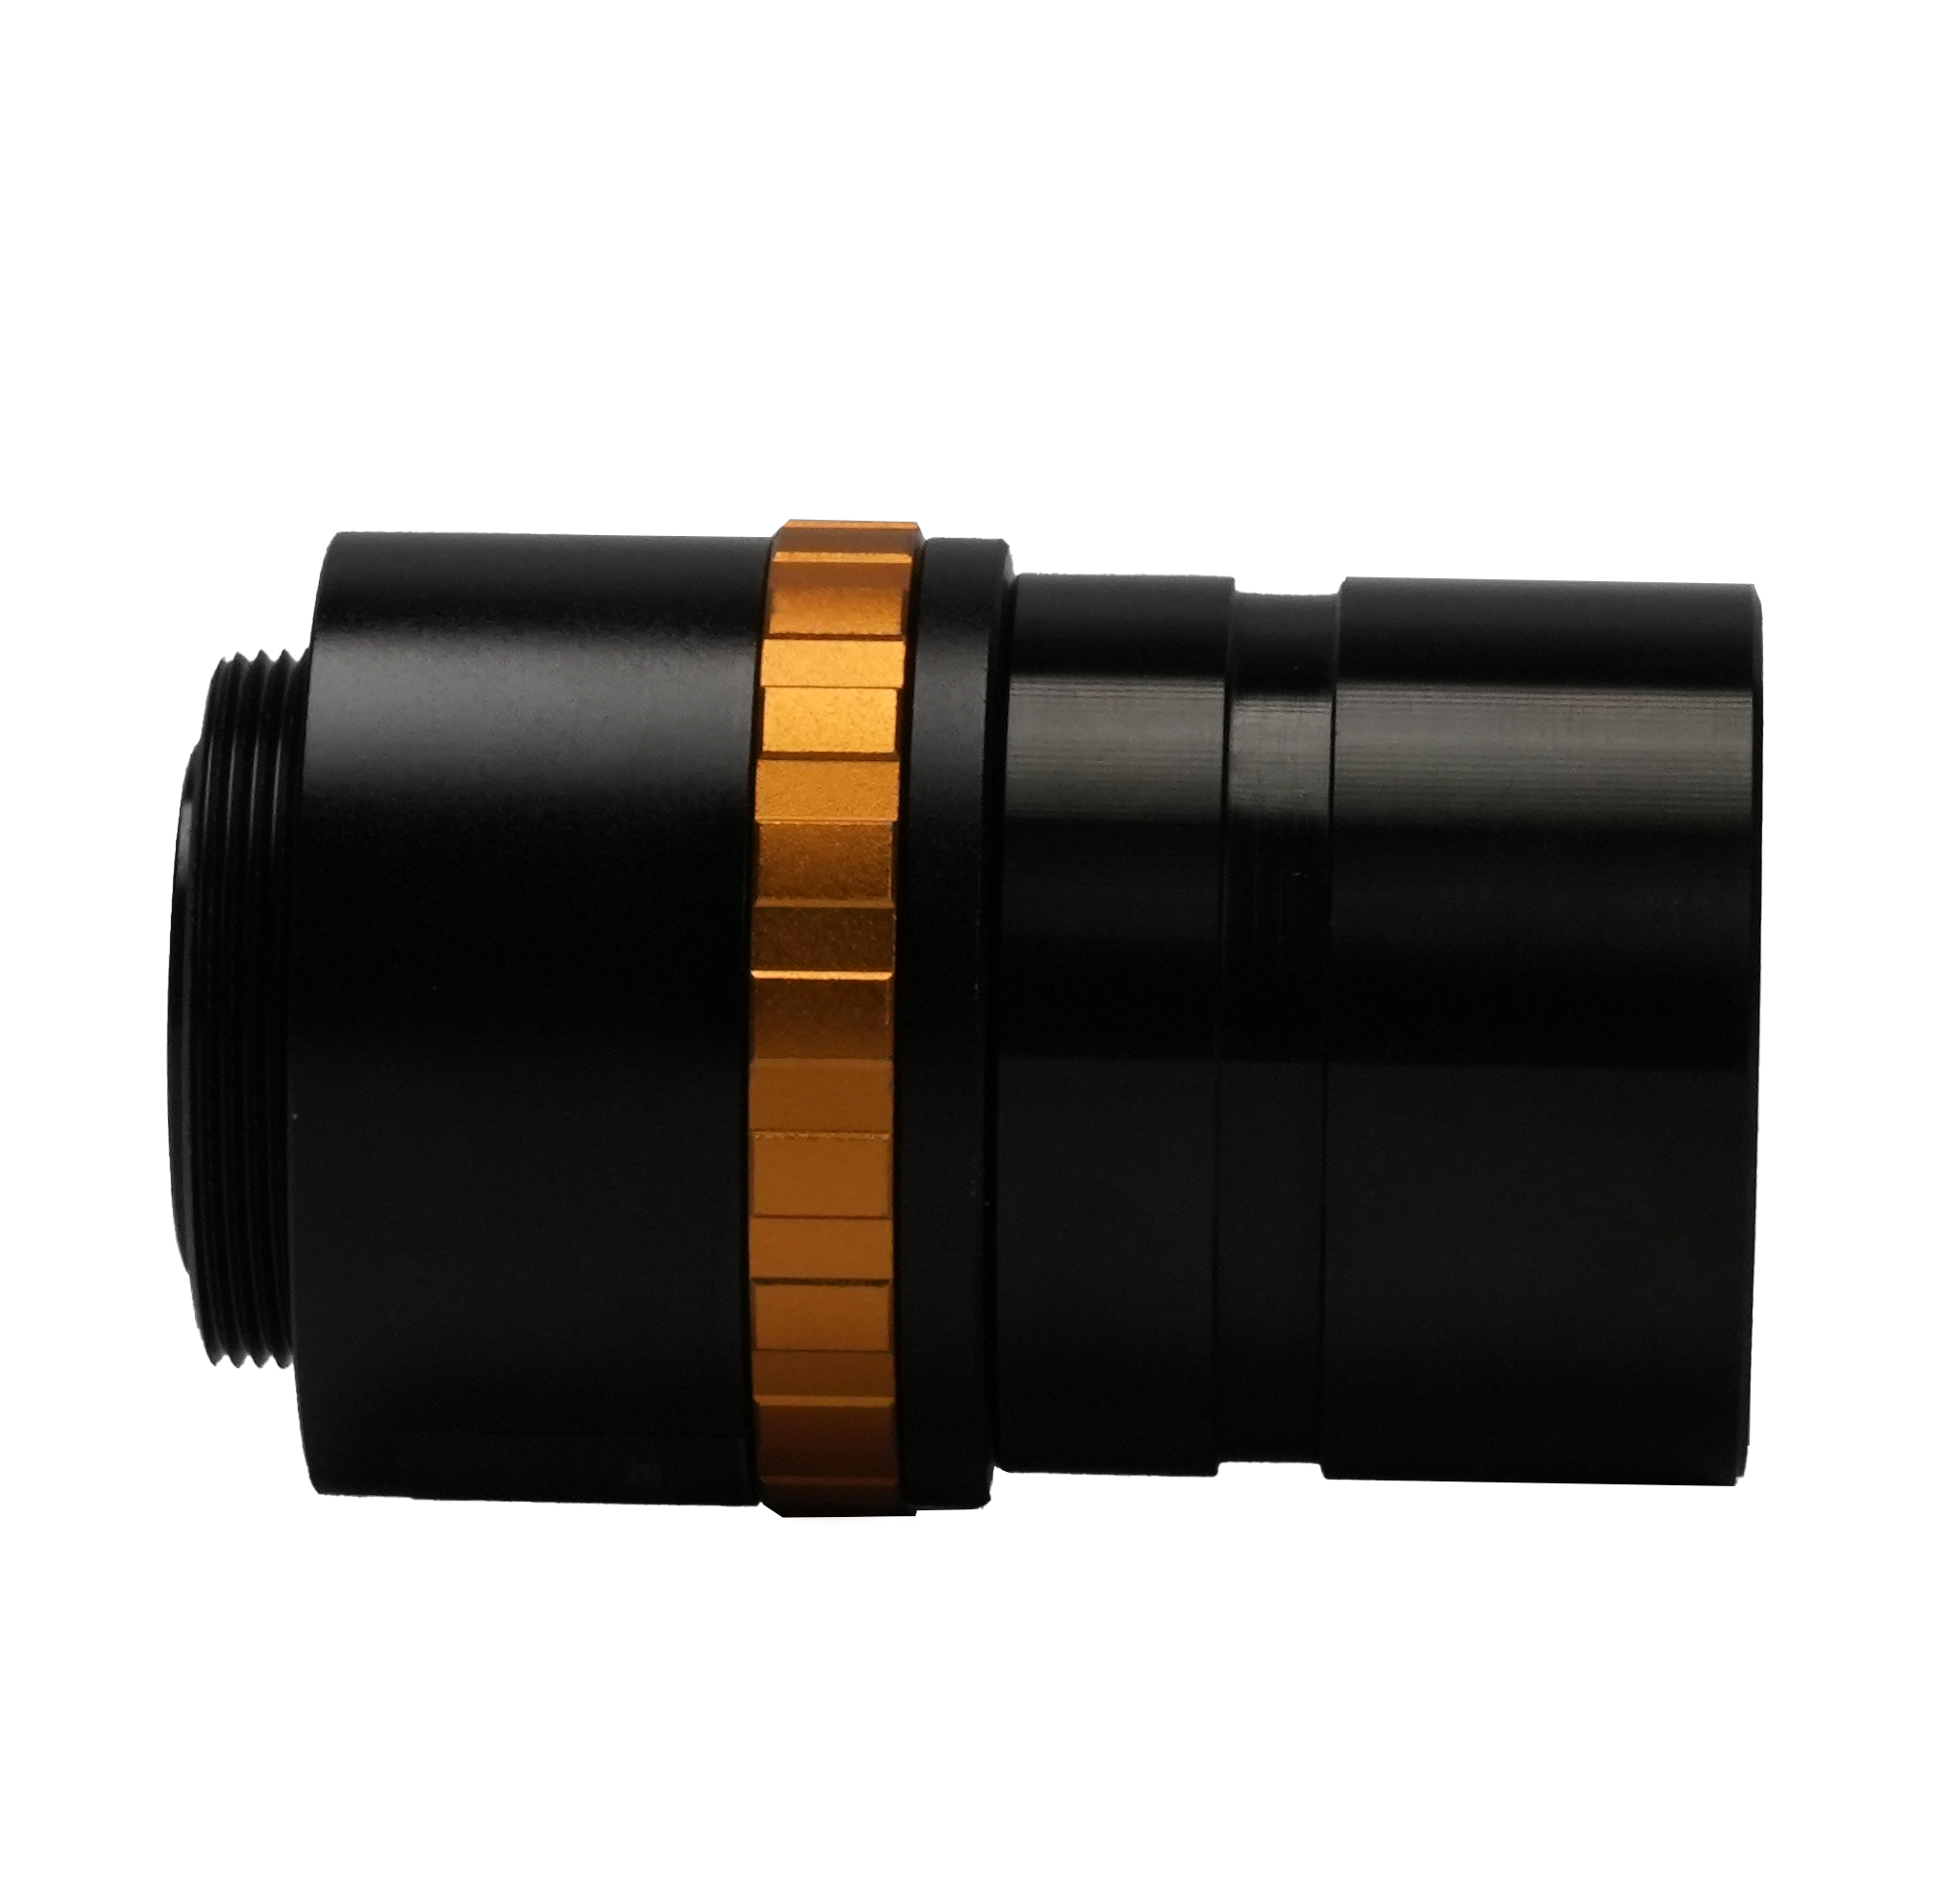 BCN3A-0.37x Регулируемый адаптер для окуляра микроскопа диаметром 31,75 мм